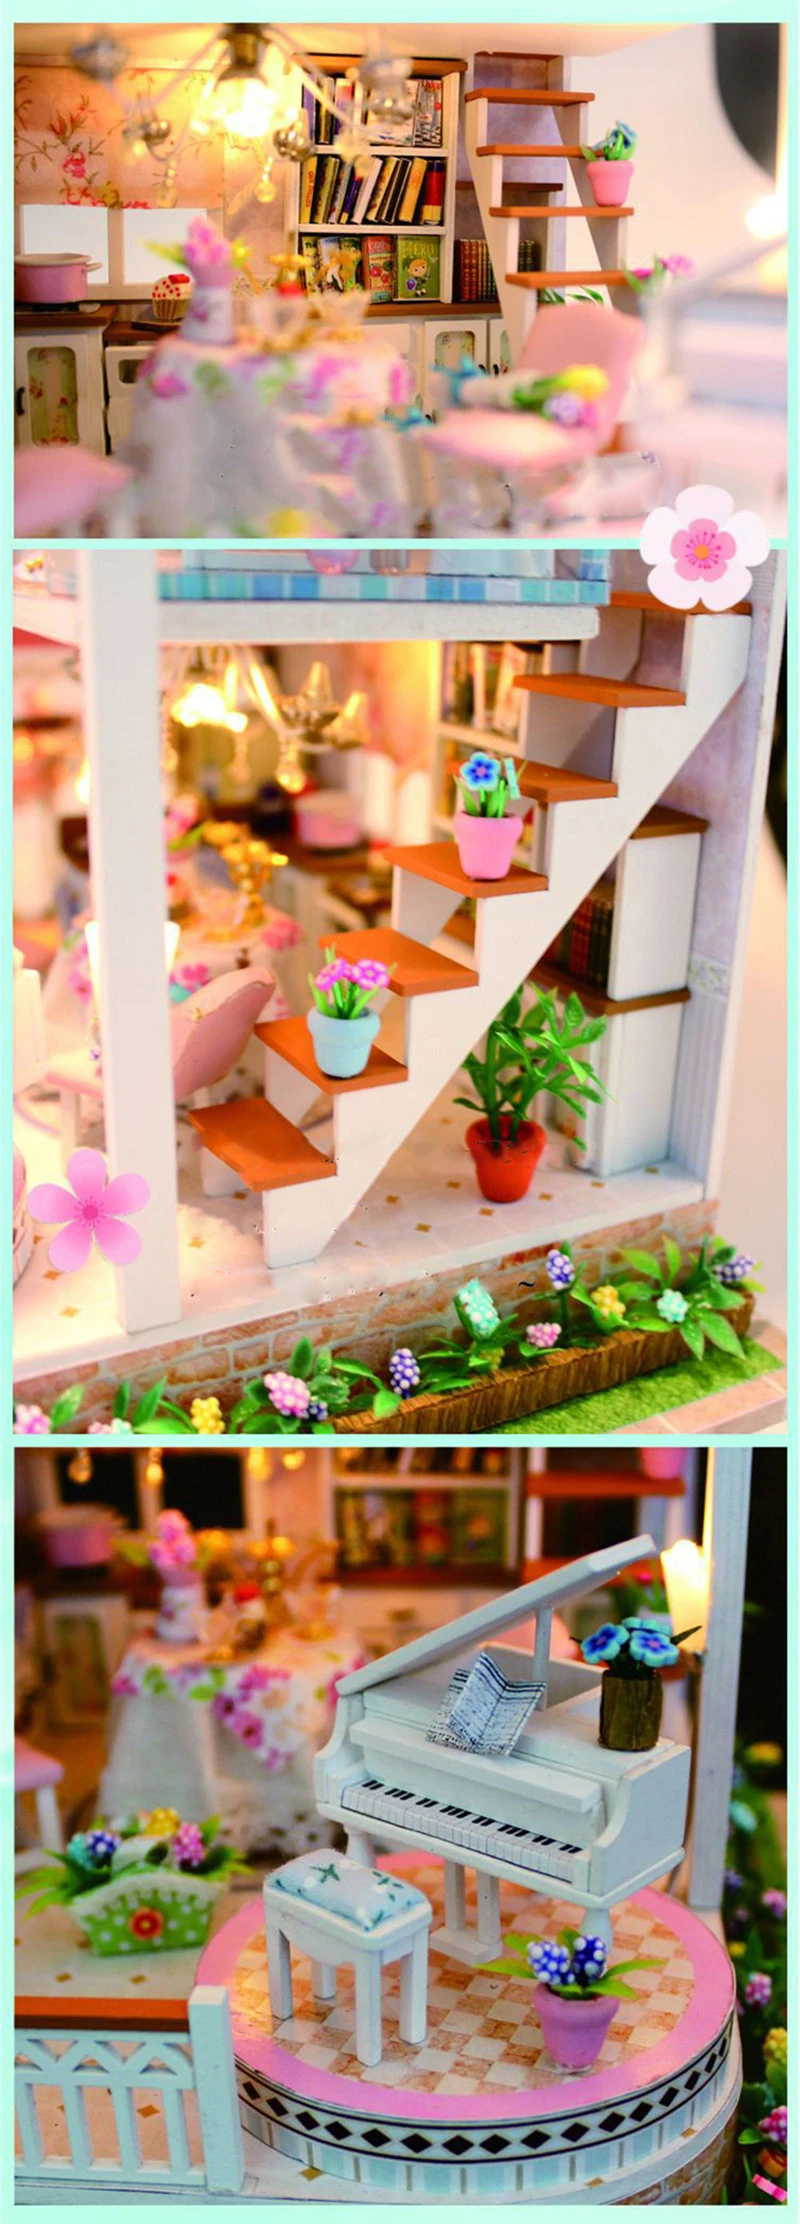 DIY кукольный домик куклы дом игрушечная мебель ролевые игры мини 3D деревянный стерео сборки головоломки игрушечные лошадки бытовой birhday